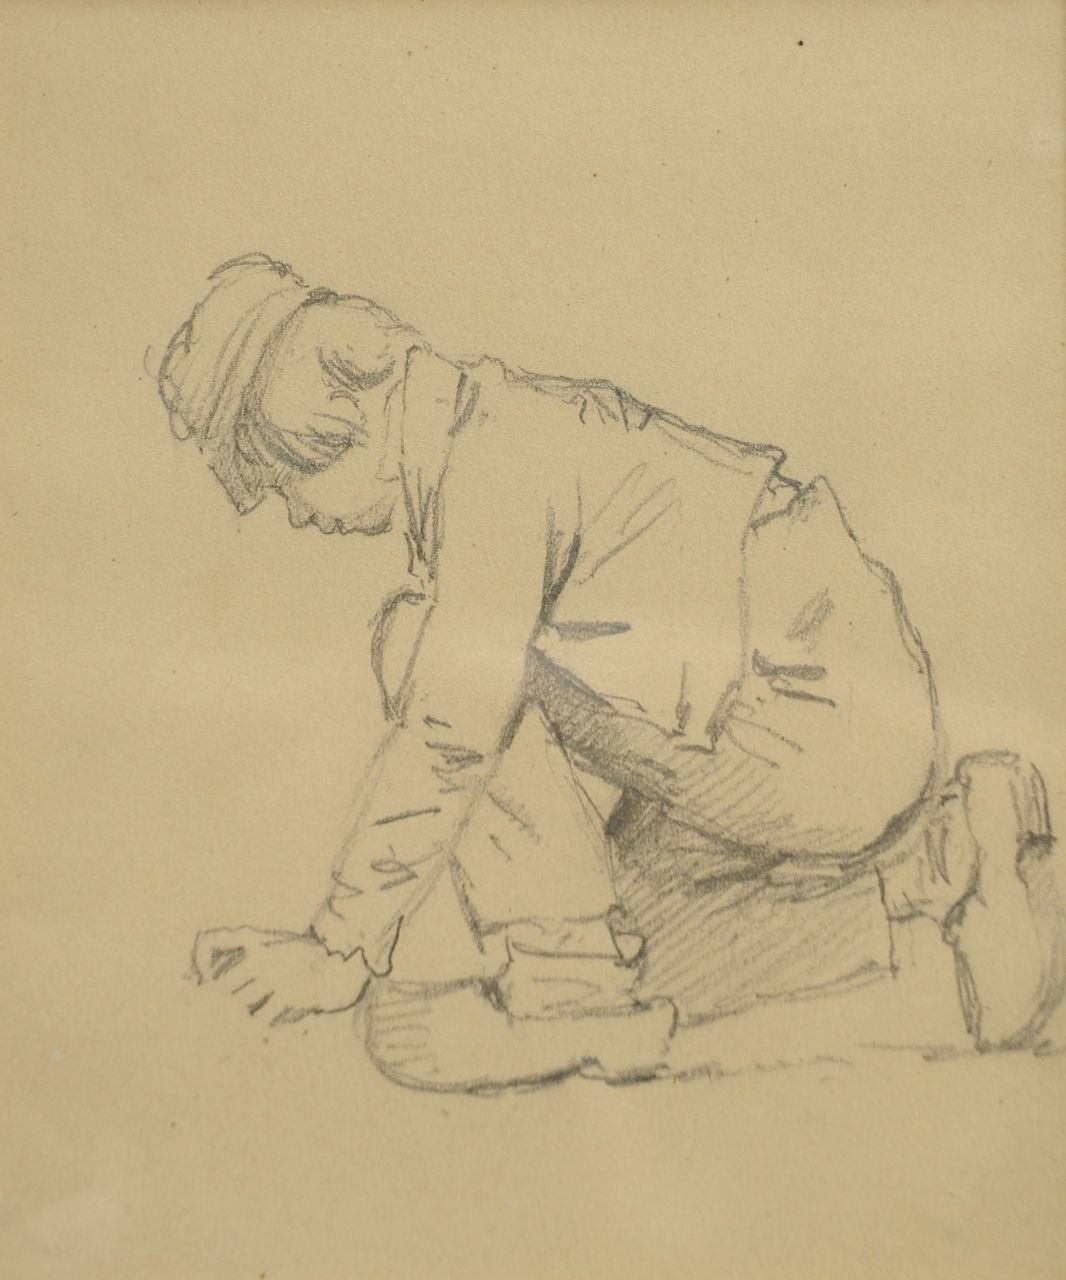 Koekkoek B.C.  | Barend Cornelis Koekkoek, Studie van een knielende boerenjongen, krijt op papier 12,8 x 10,2 cm